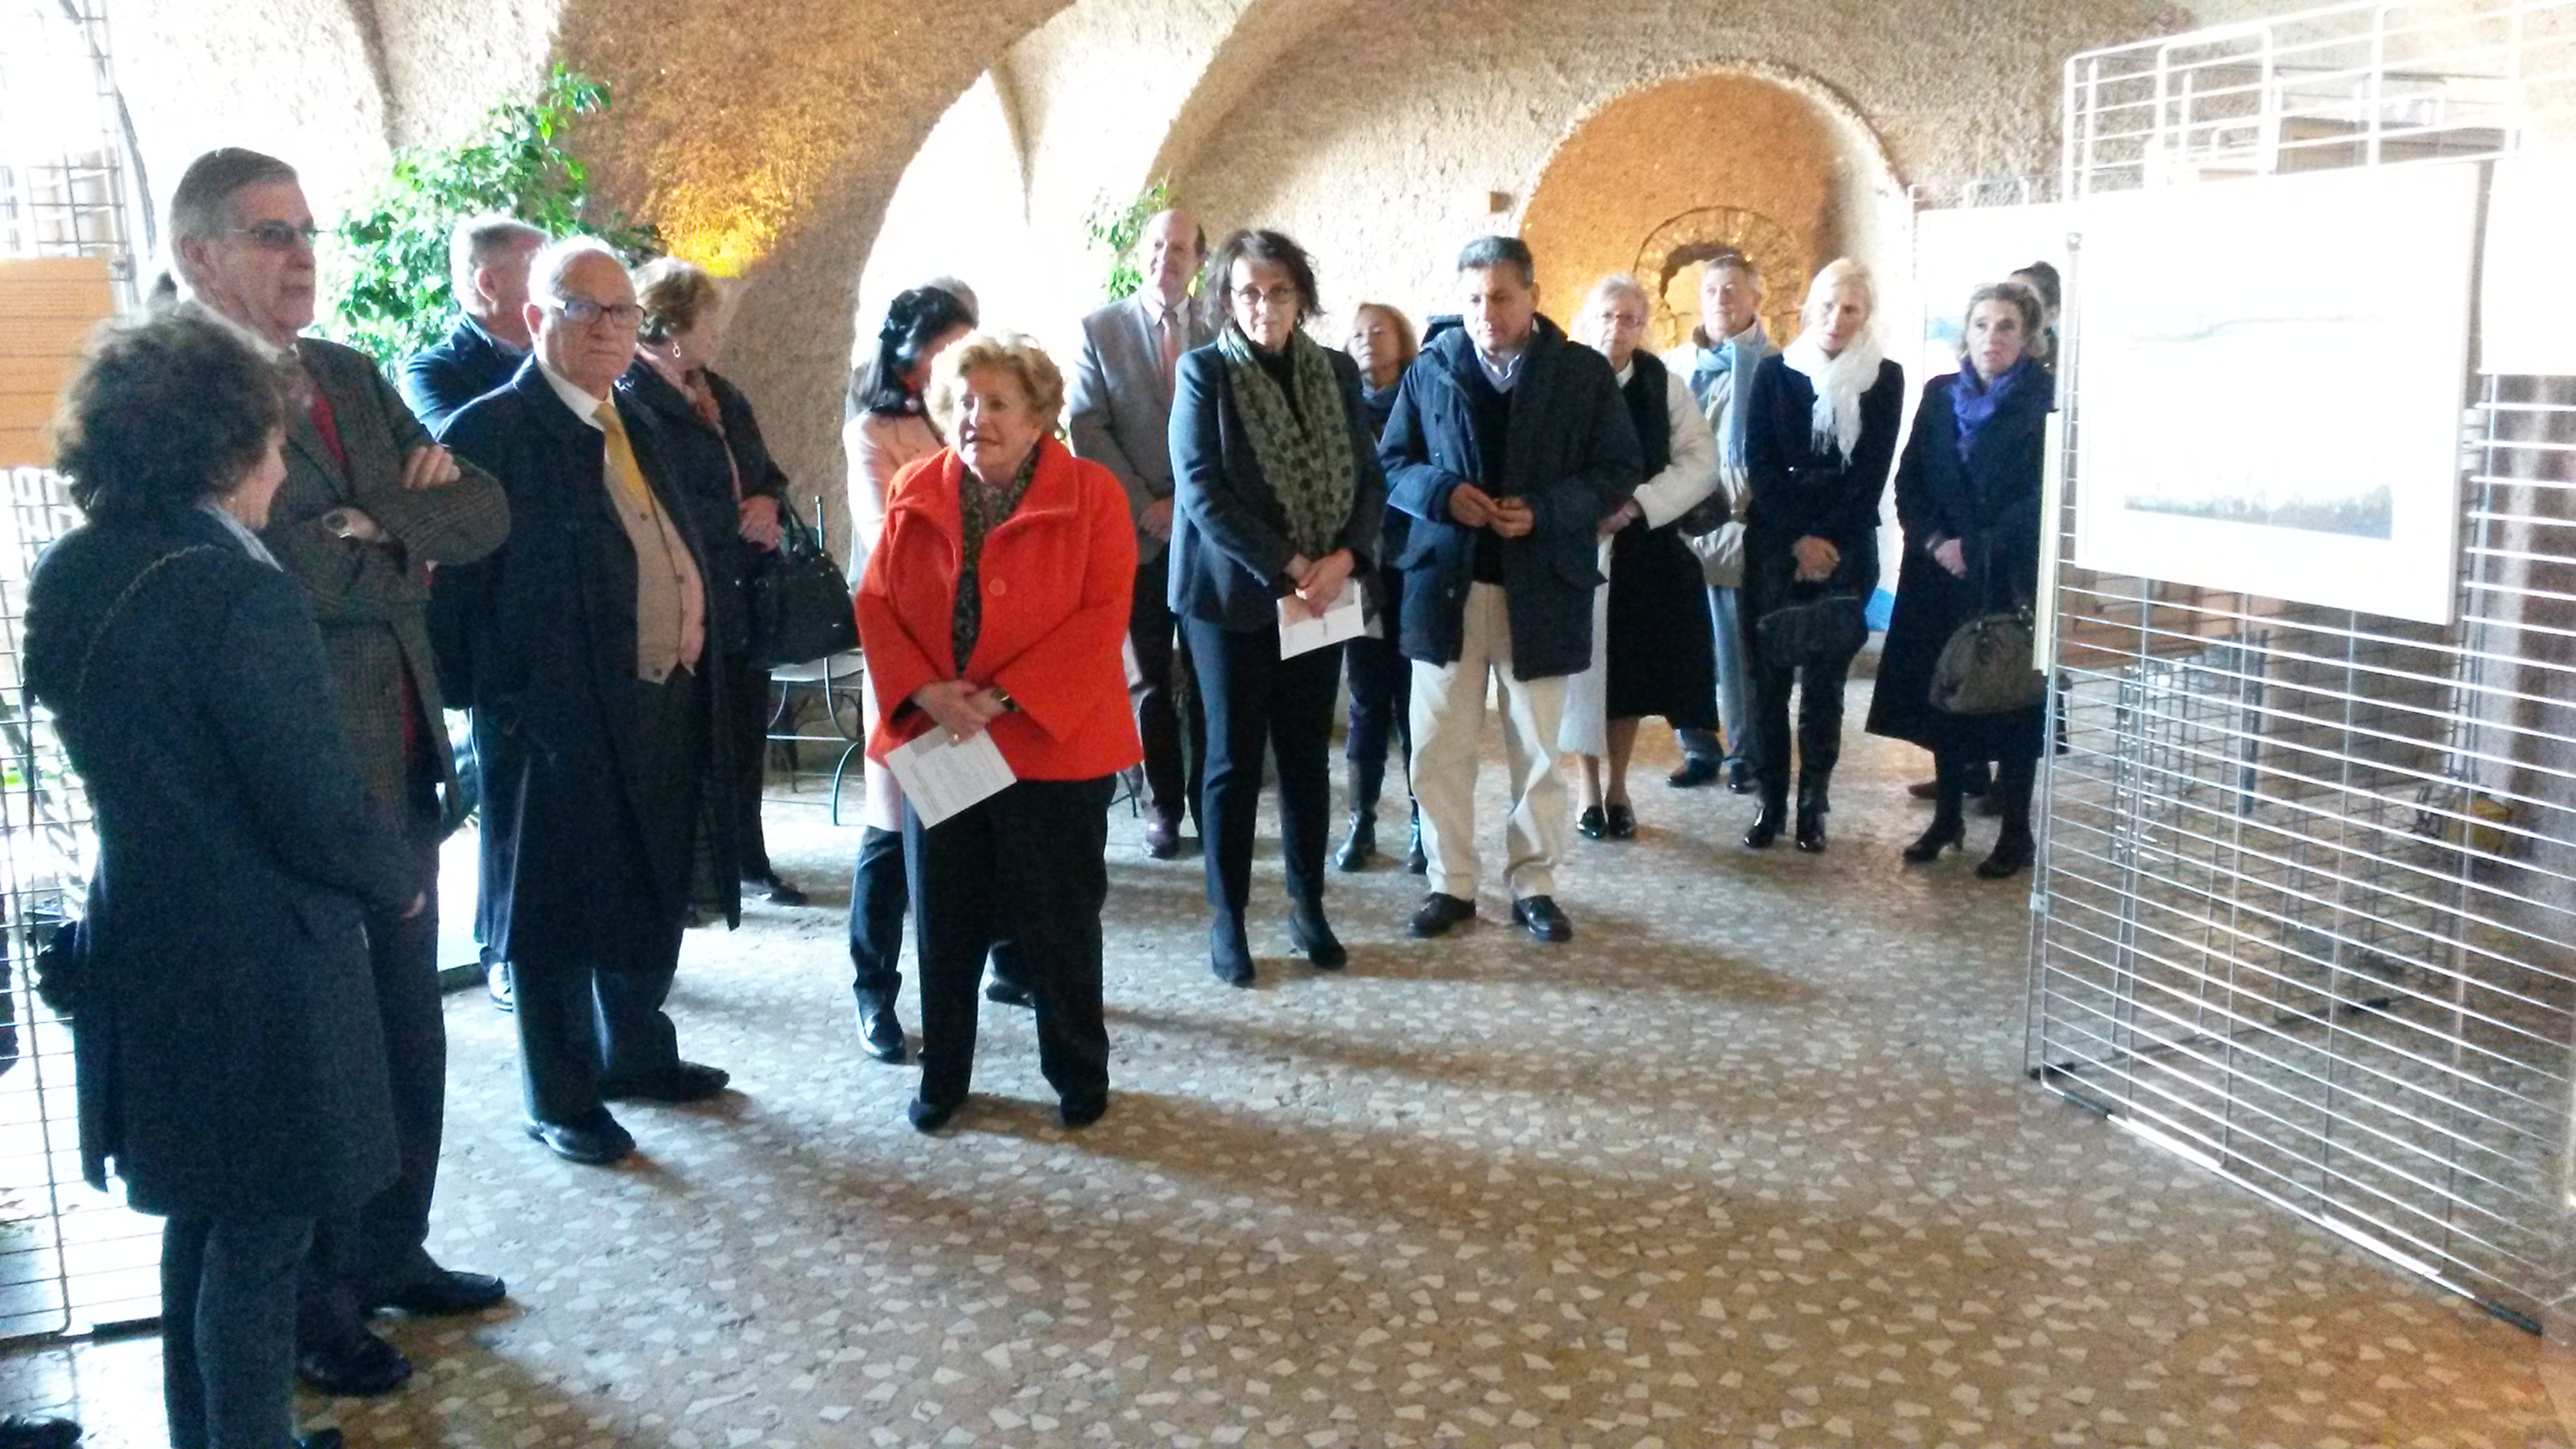 inaugurazione mostra 2015 castello di duino news et mostra e altri eventi 31 ottobre 2015